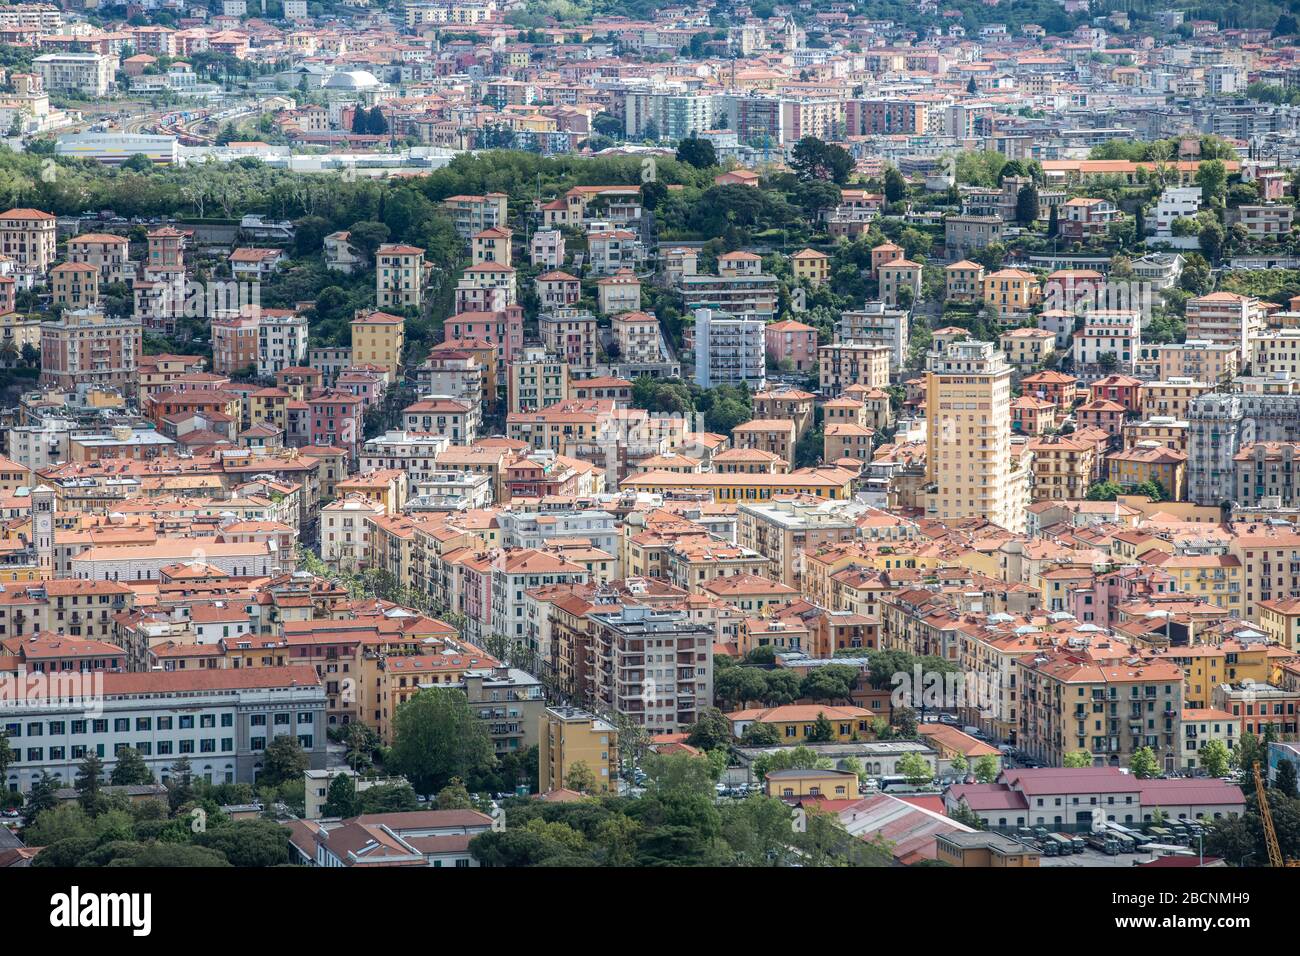 City centre of La Spezia vieved from a mountain top. La Spezia, Italy. Stock Photo